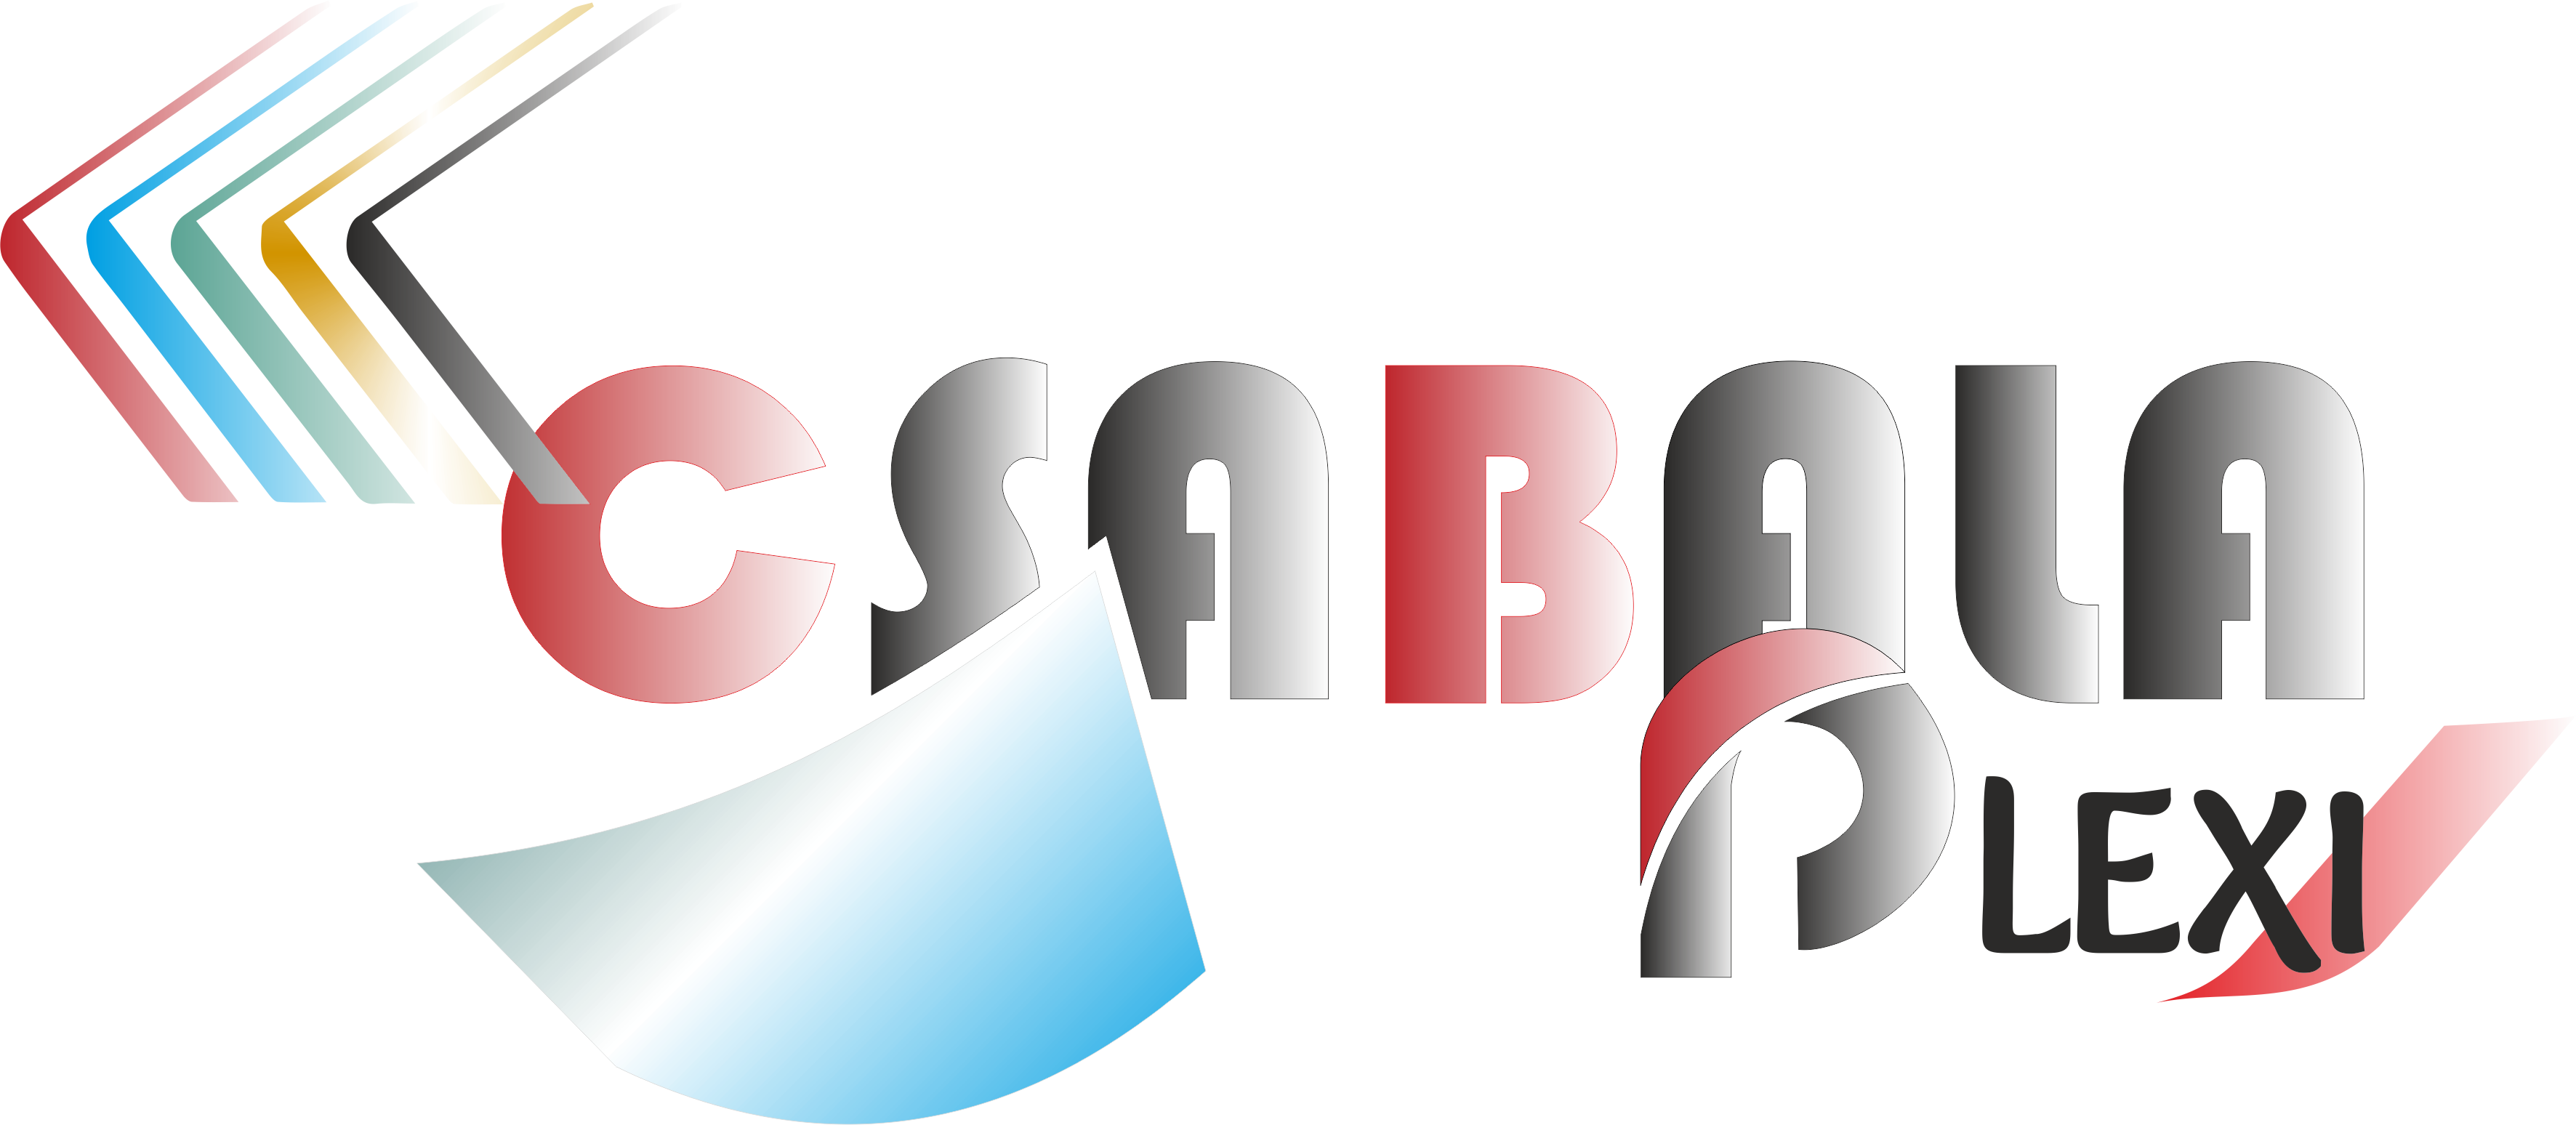 Csabala plexi Kft logo